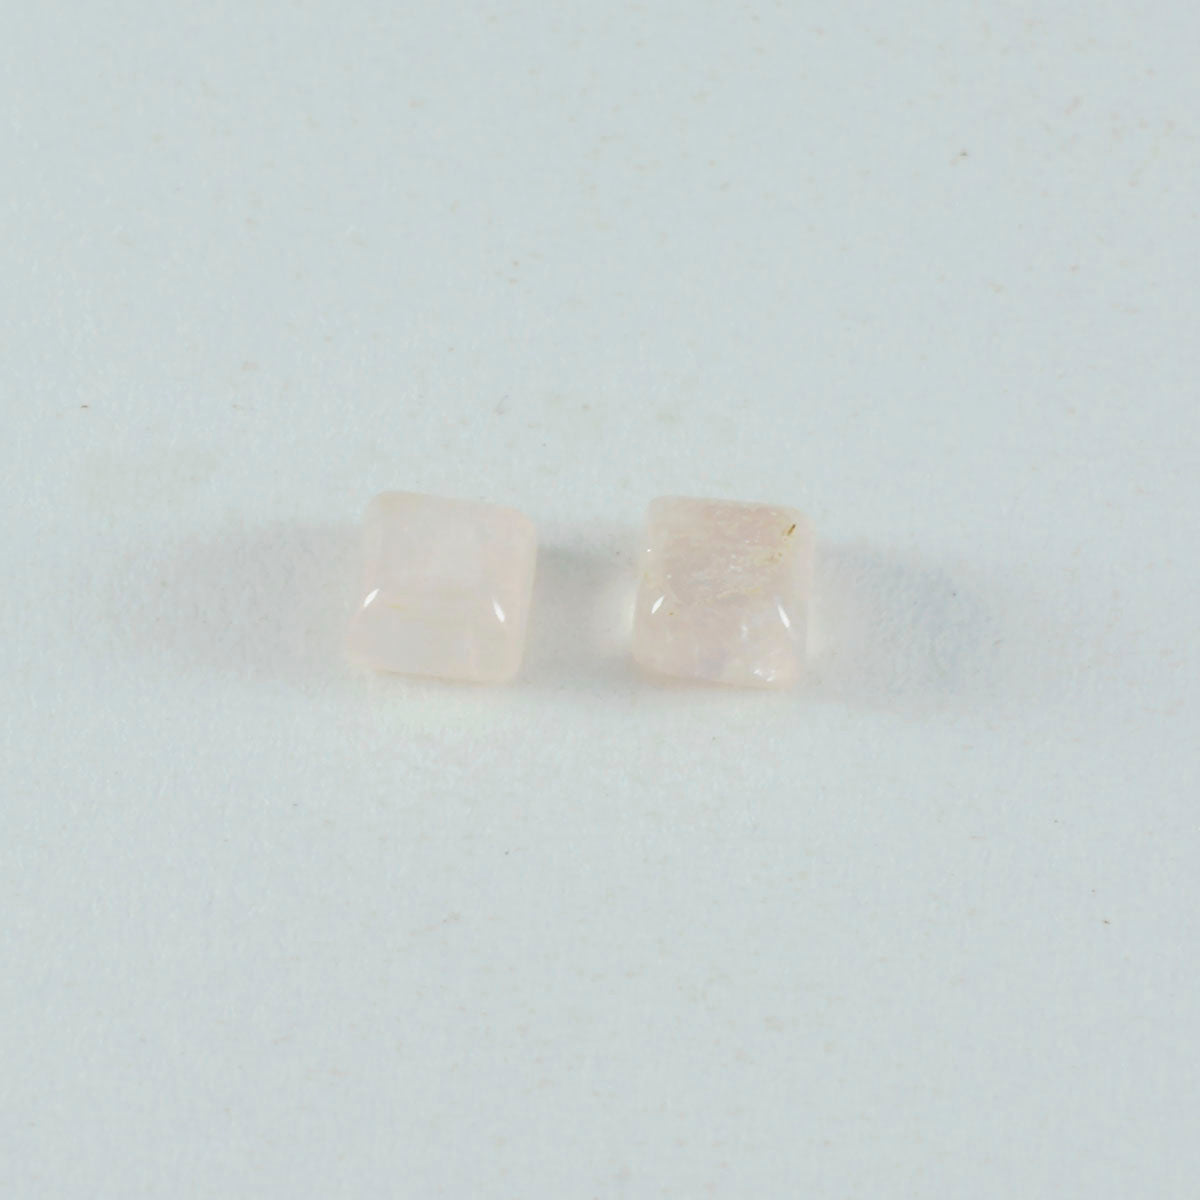 riyogems 1 шт. розовый кварц кабошон 6x6 мм квадратной формы прекрасные качественные драгоценные камни